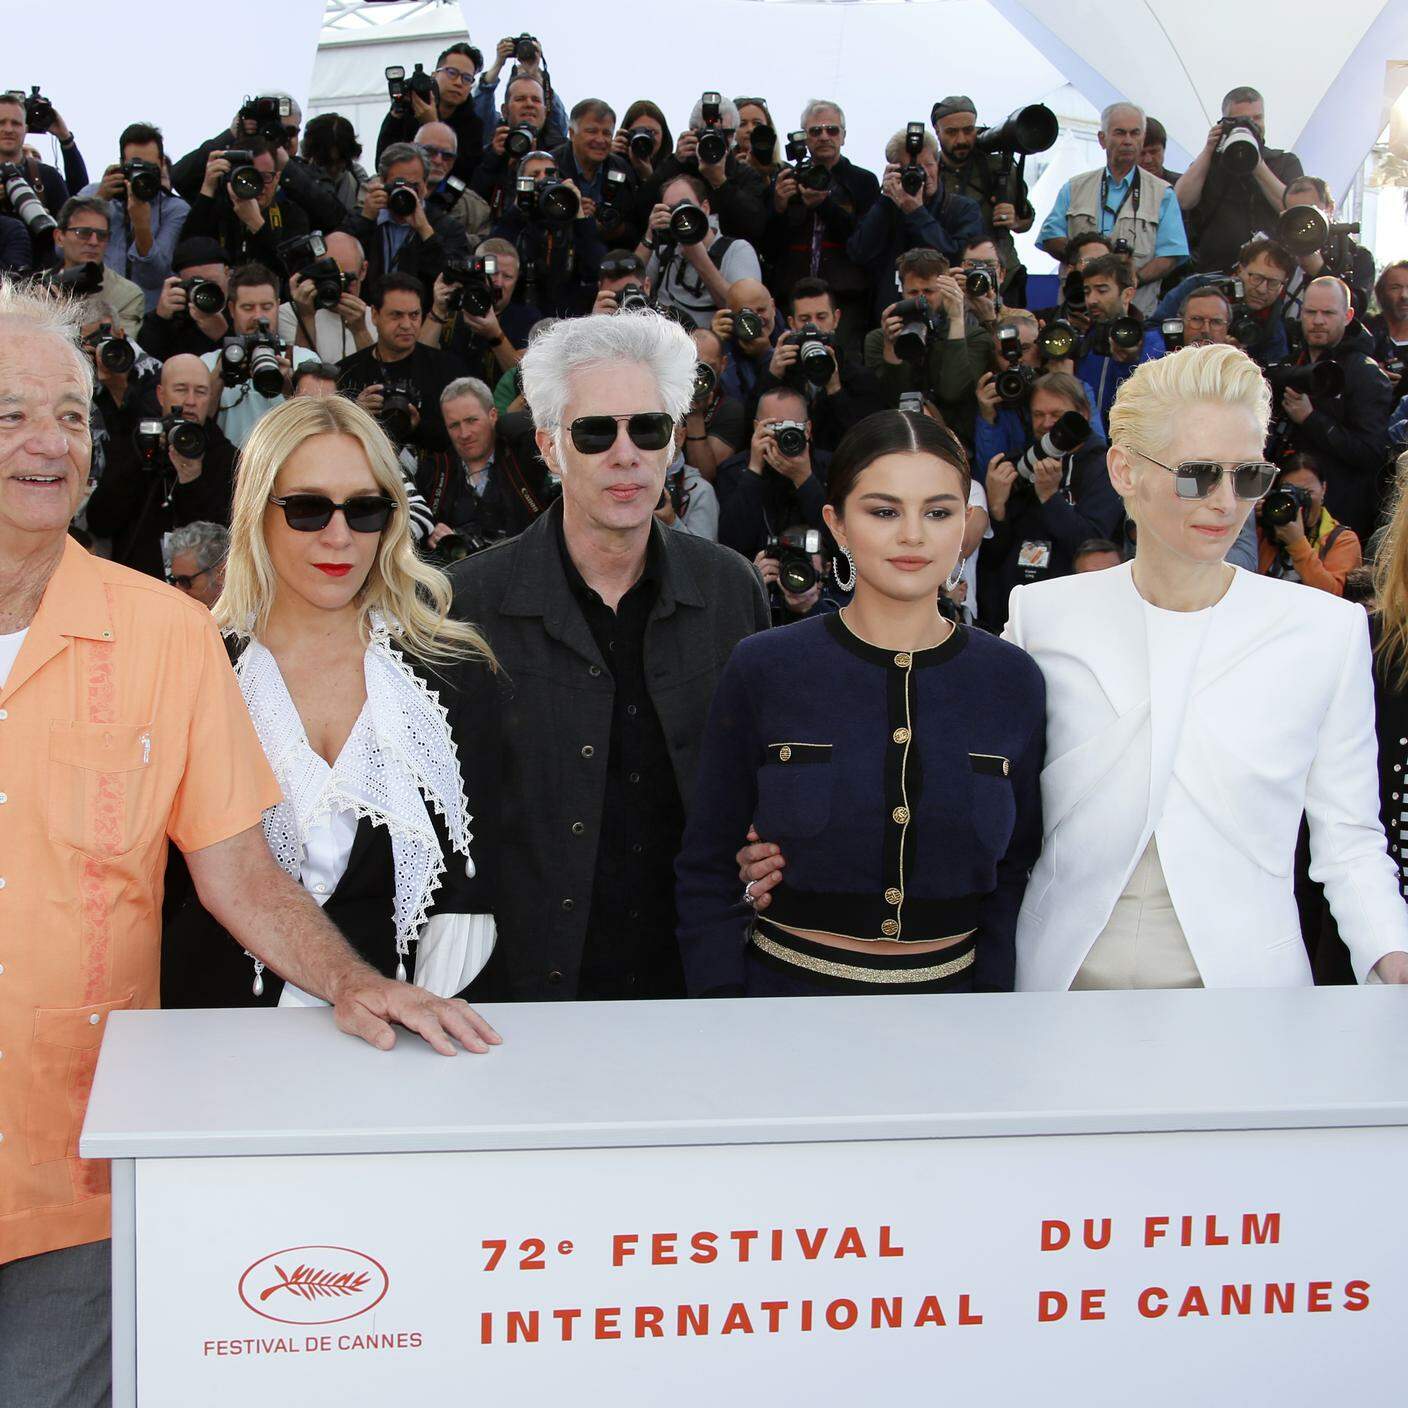 Il cast de "I morti non muoiono" a Cannes 2019